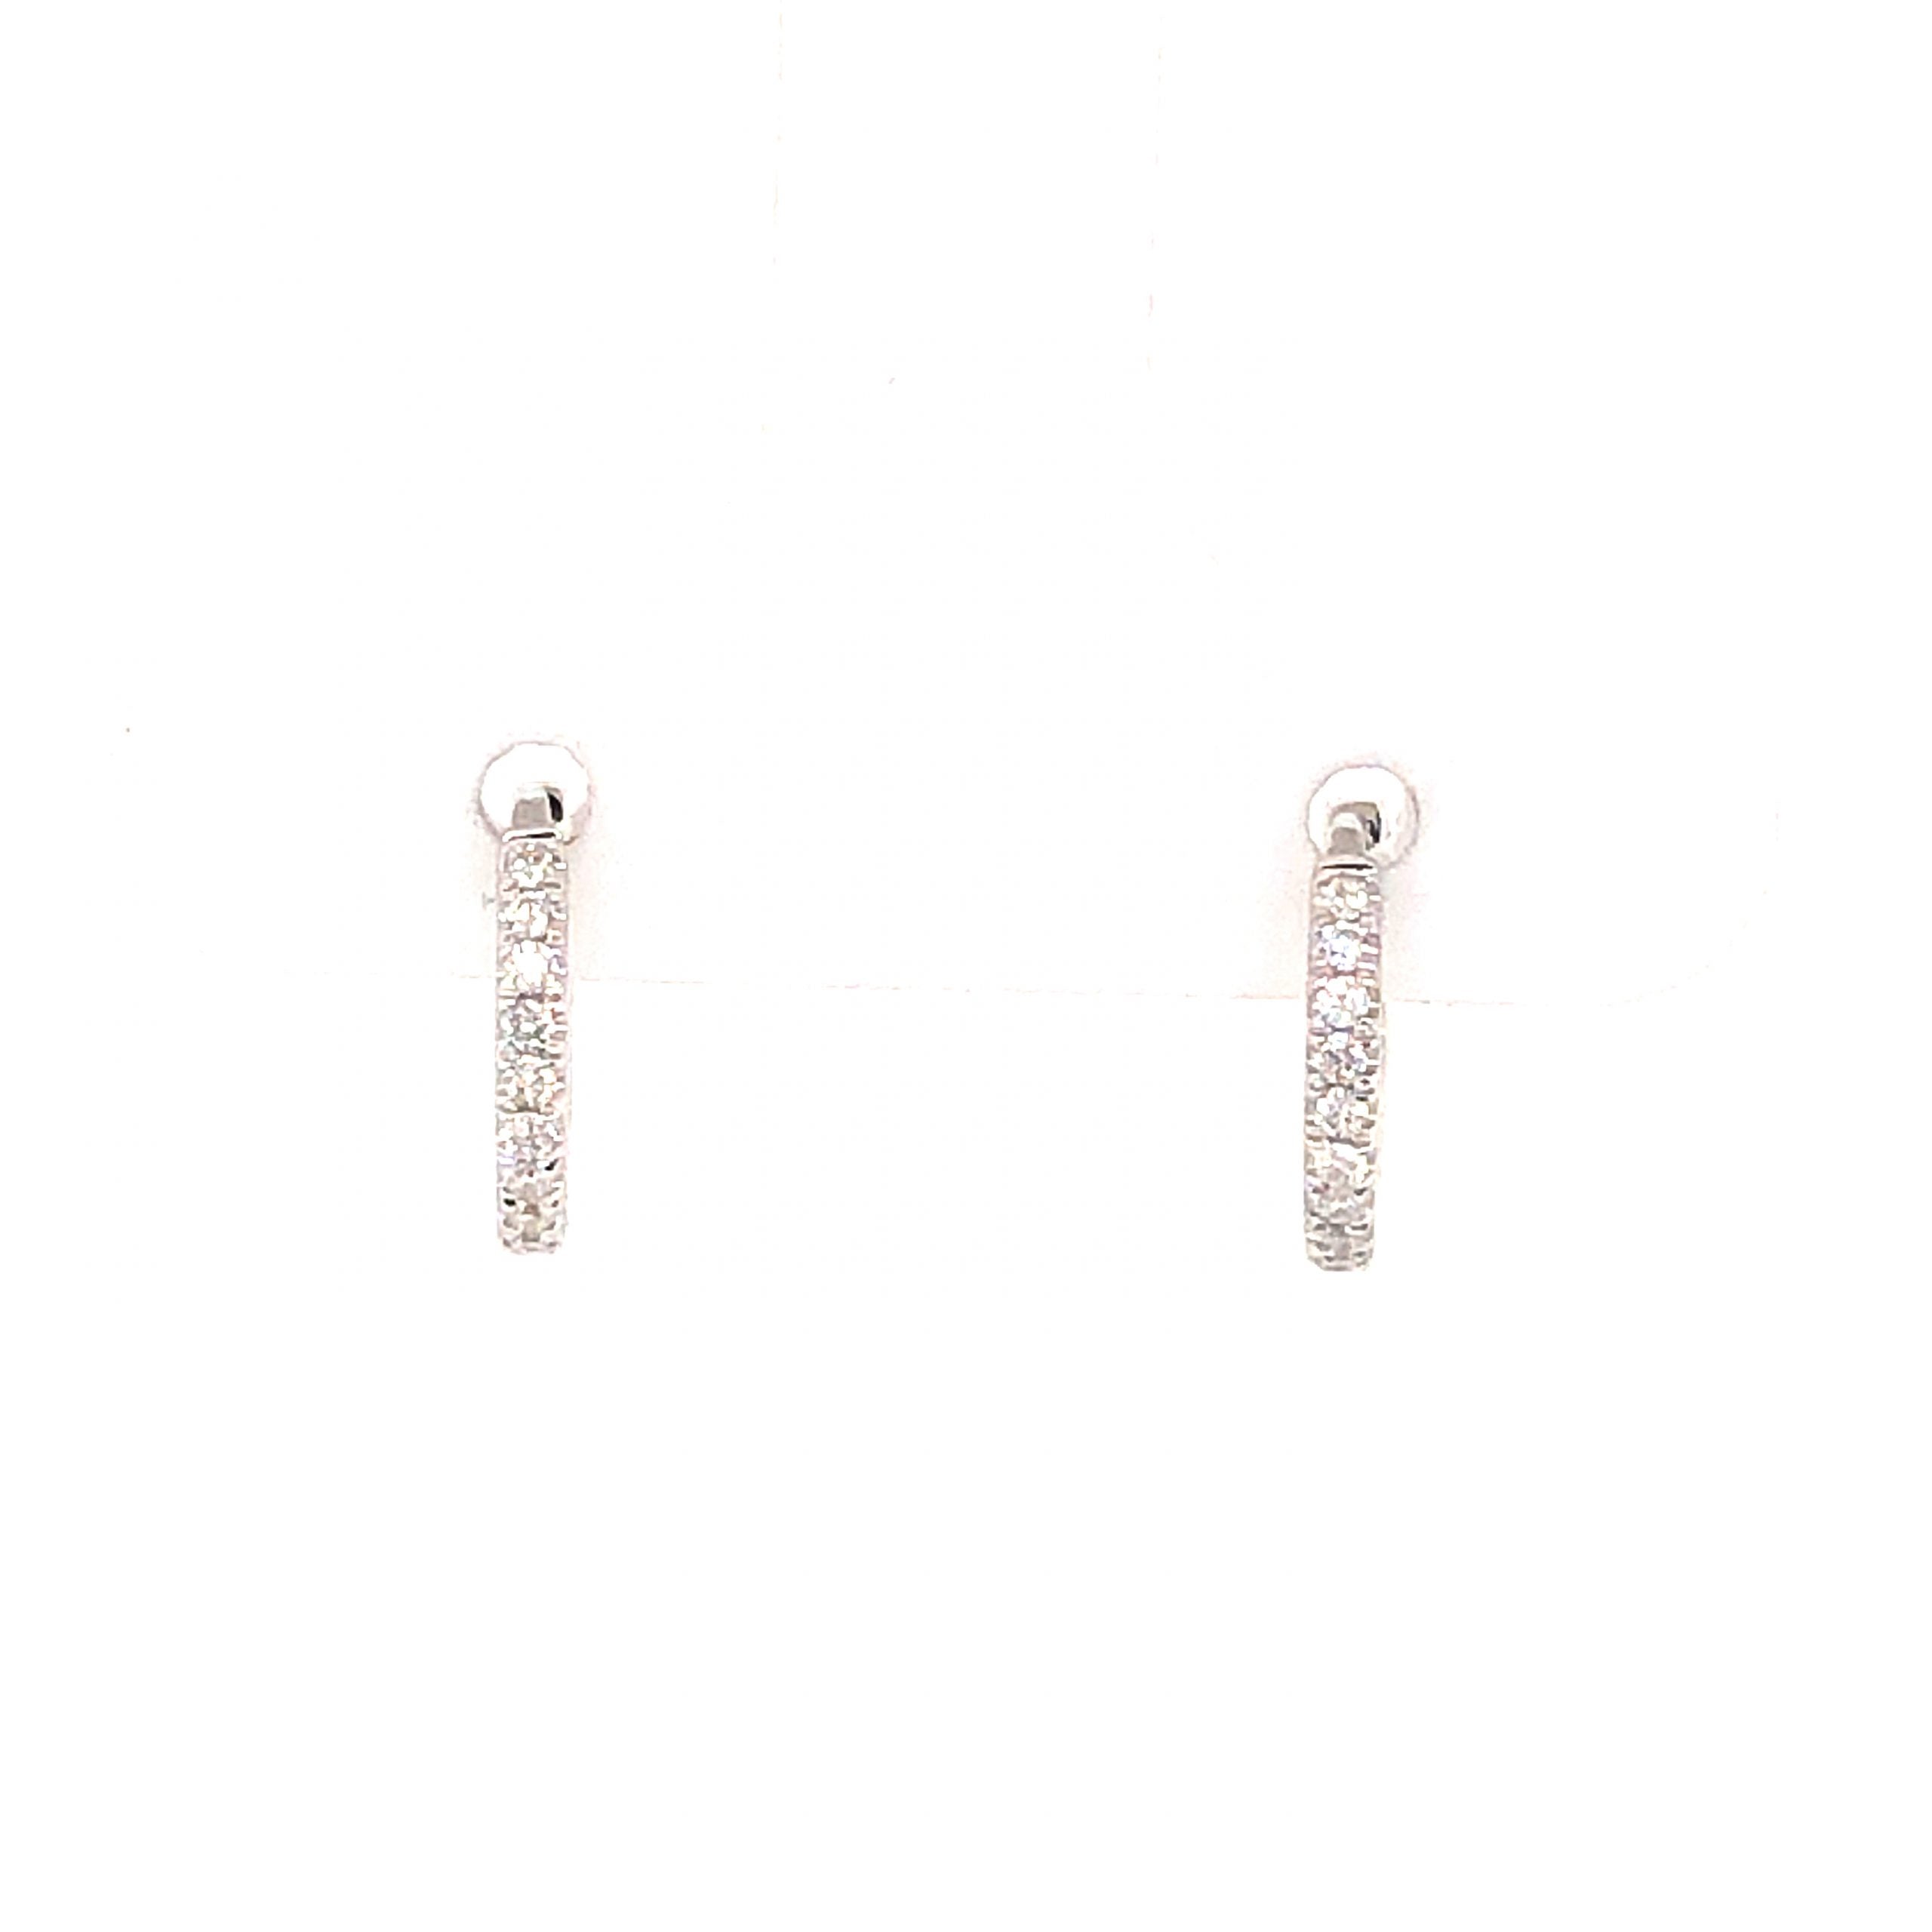 Marguerite 18kt White Gold Small Diamond Stud Earrings — Annoushka US